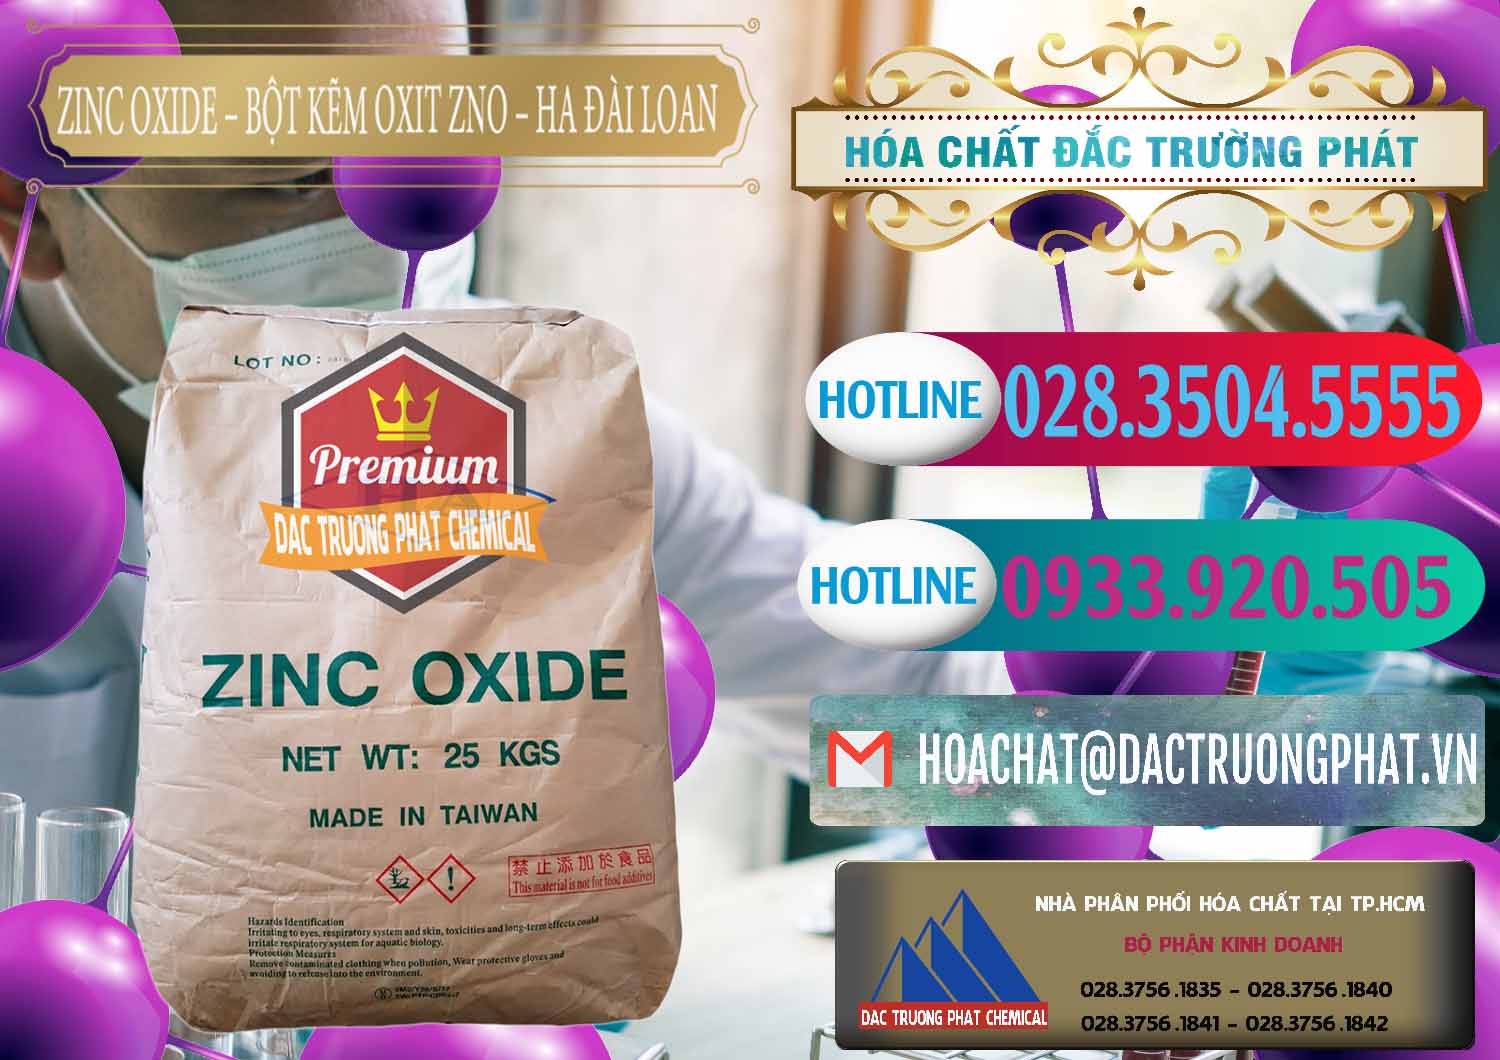 Chuyên bán & cung cấp Zinc Oxide - Bột Kẽm Oxit ZNO HA Đài Loan Taiwan - 0180 - Cty cung cấp - kinh doanh hóa chất tại TP.HCM - truongphat.vn